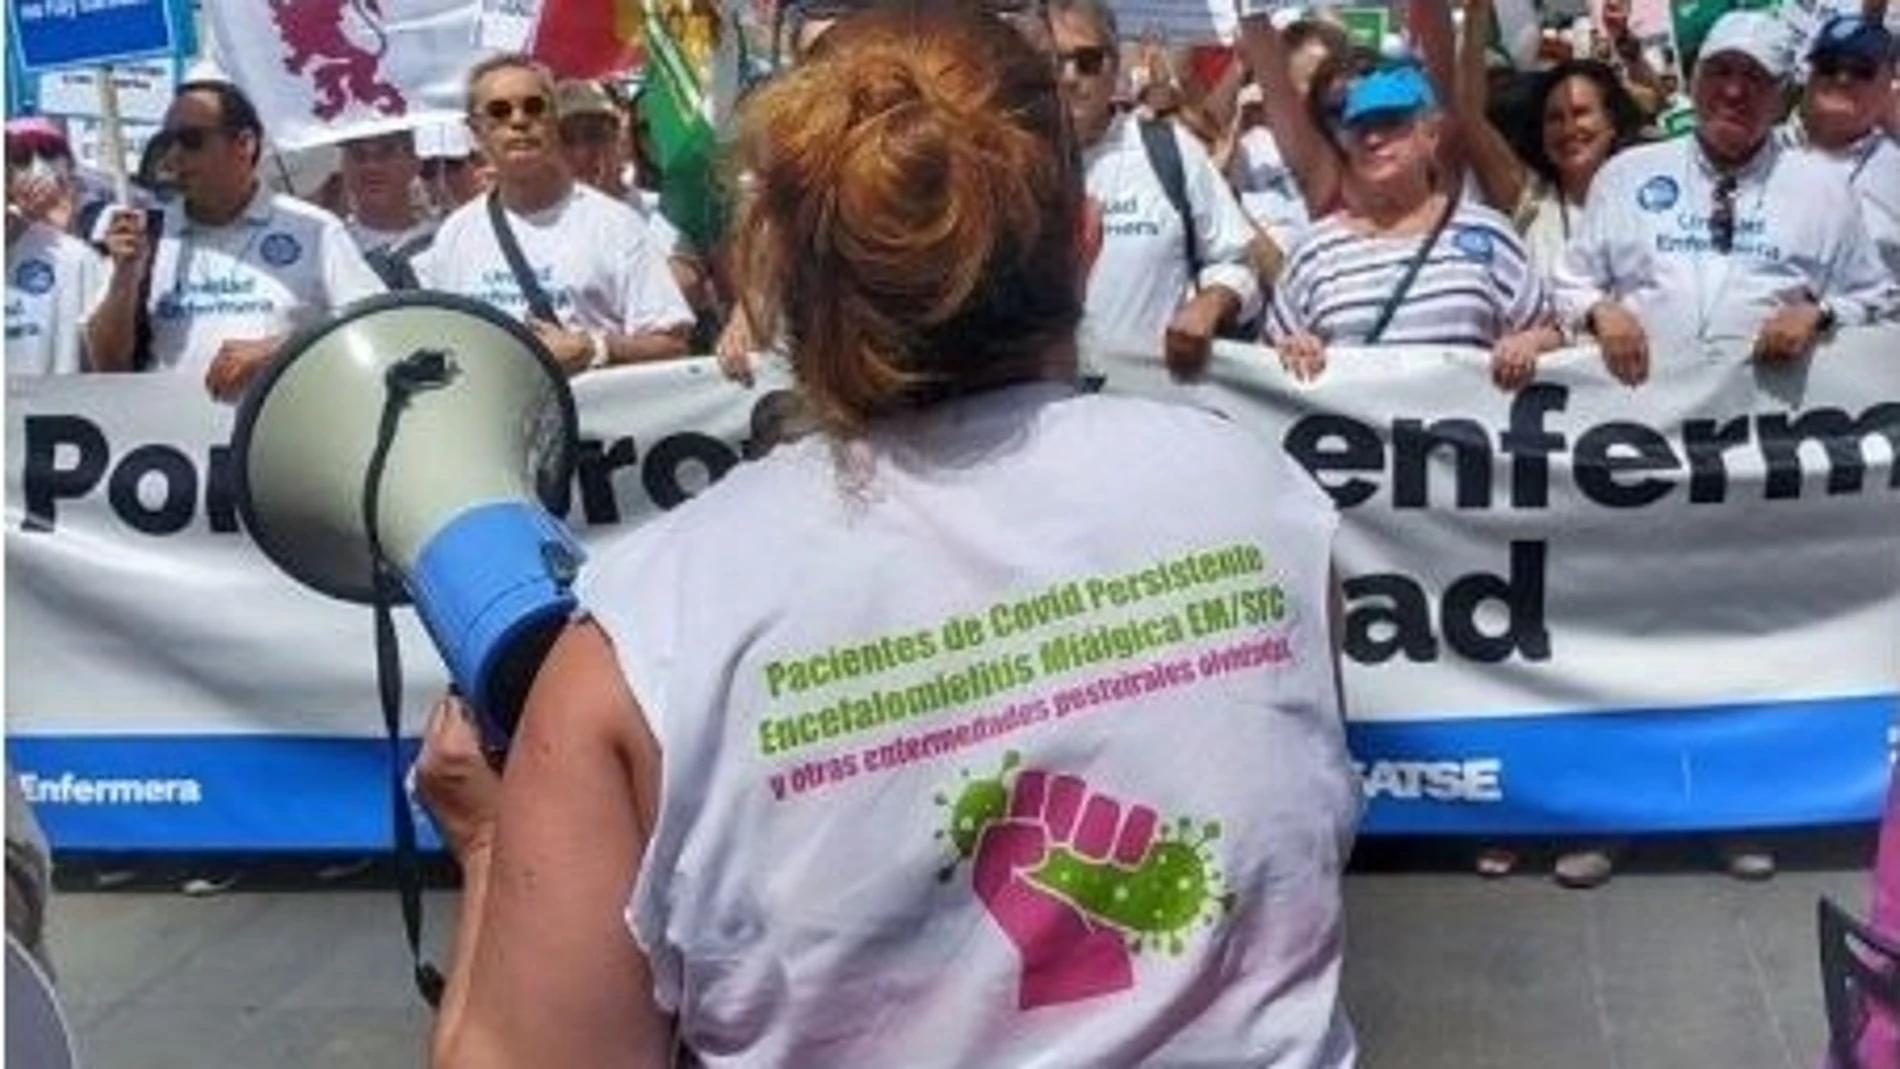 Afectados por Covid persistente en una manifestación el pasado 30 de septiembre